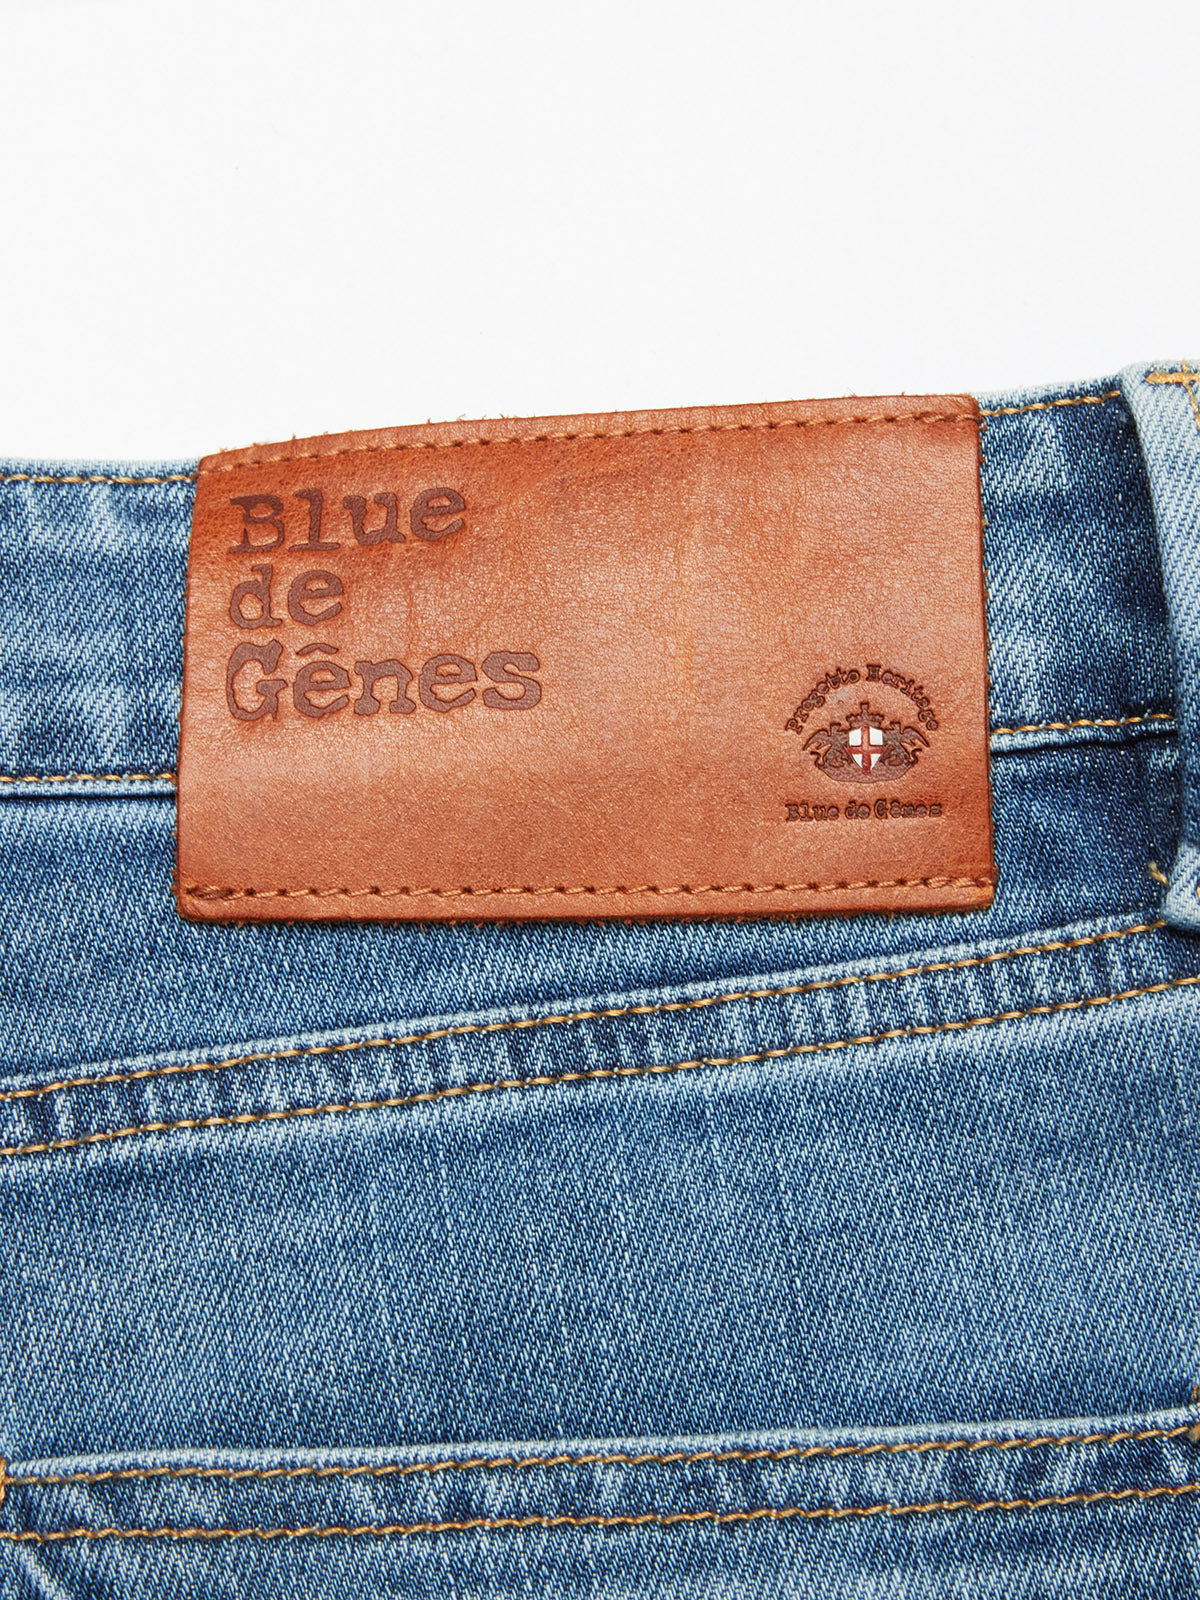 Blue de Gênes Vinci Pala Used Jeans